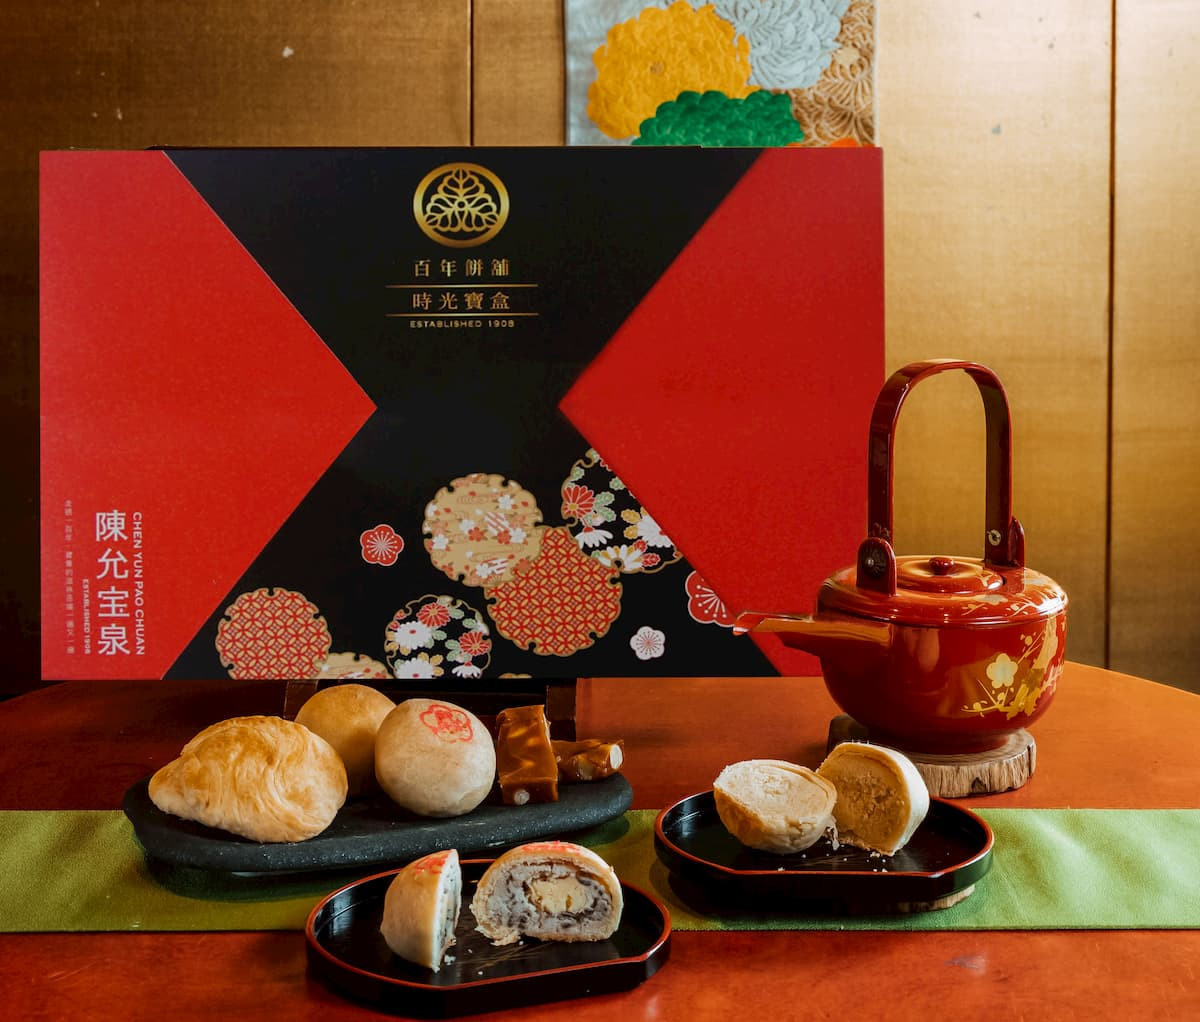 紅色「時光寶盒」，表達出品牌中日混合的獨特風格，更承載了陳允寶泉五代的時光故事。